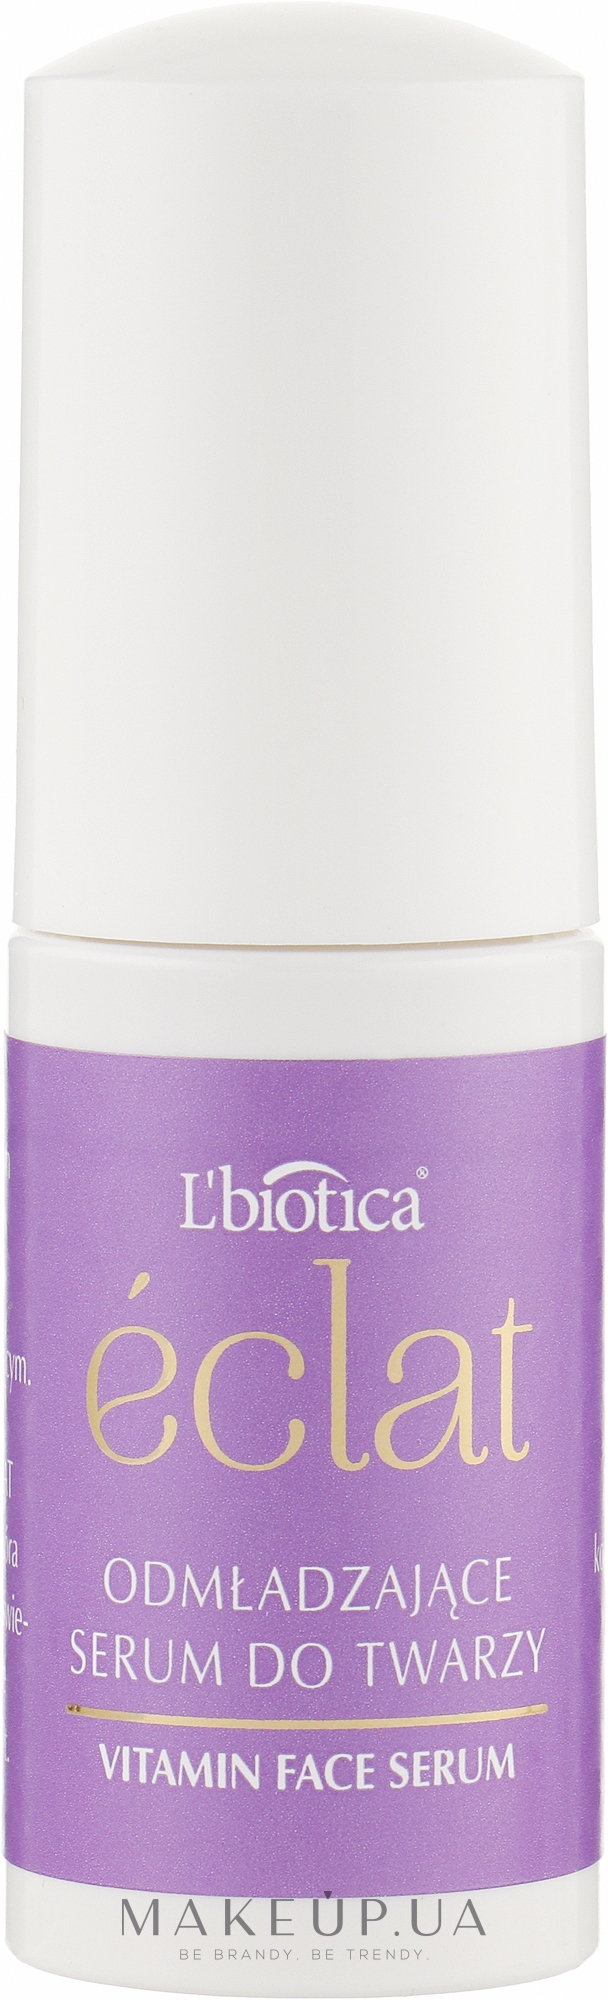 Омолоджувальна сироватка для обличчя - L'biotica Eclat Glow Serum Rejuvenating Face Serum — фото 15ml